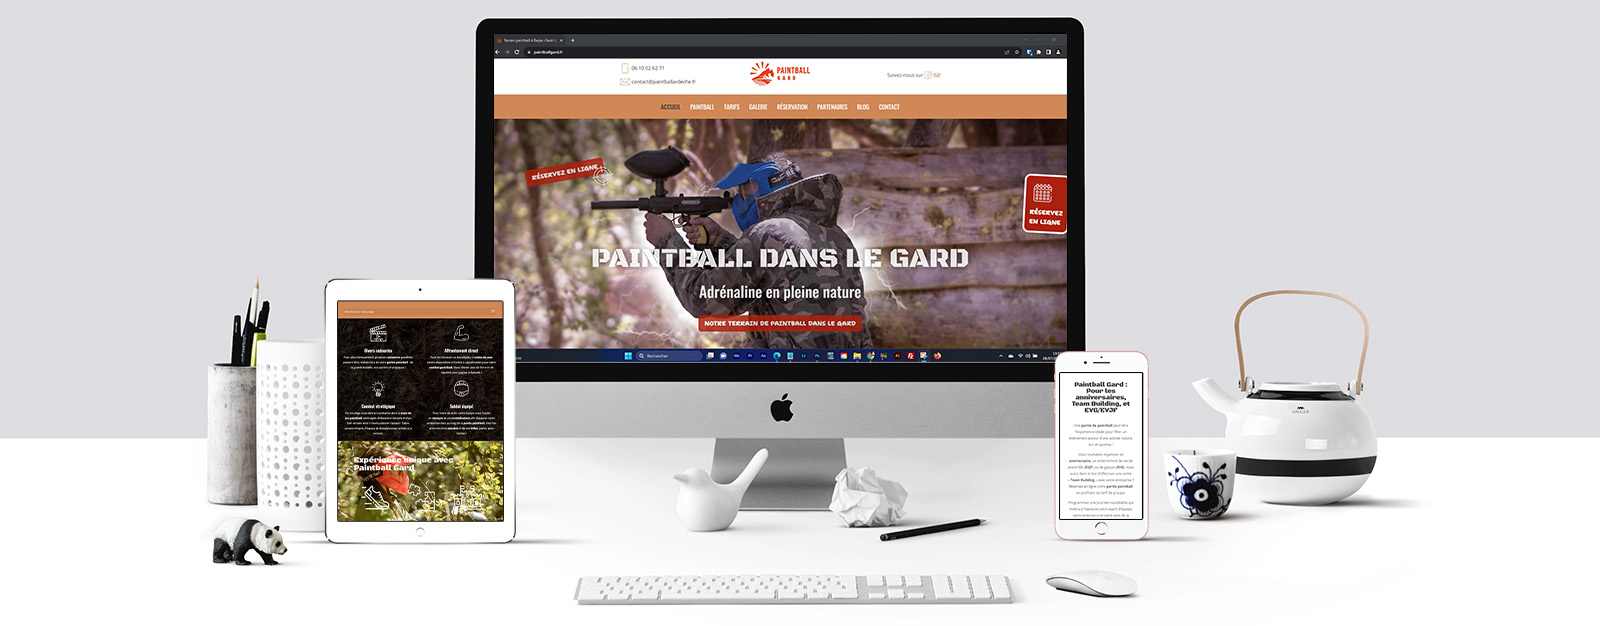 L'agence Index LD a travaillé sur la réalisation du site internet de Paintball Gard et de sa réservation en ligne